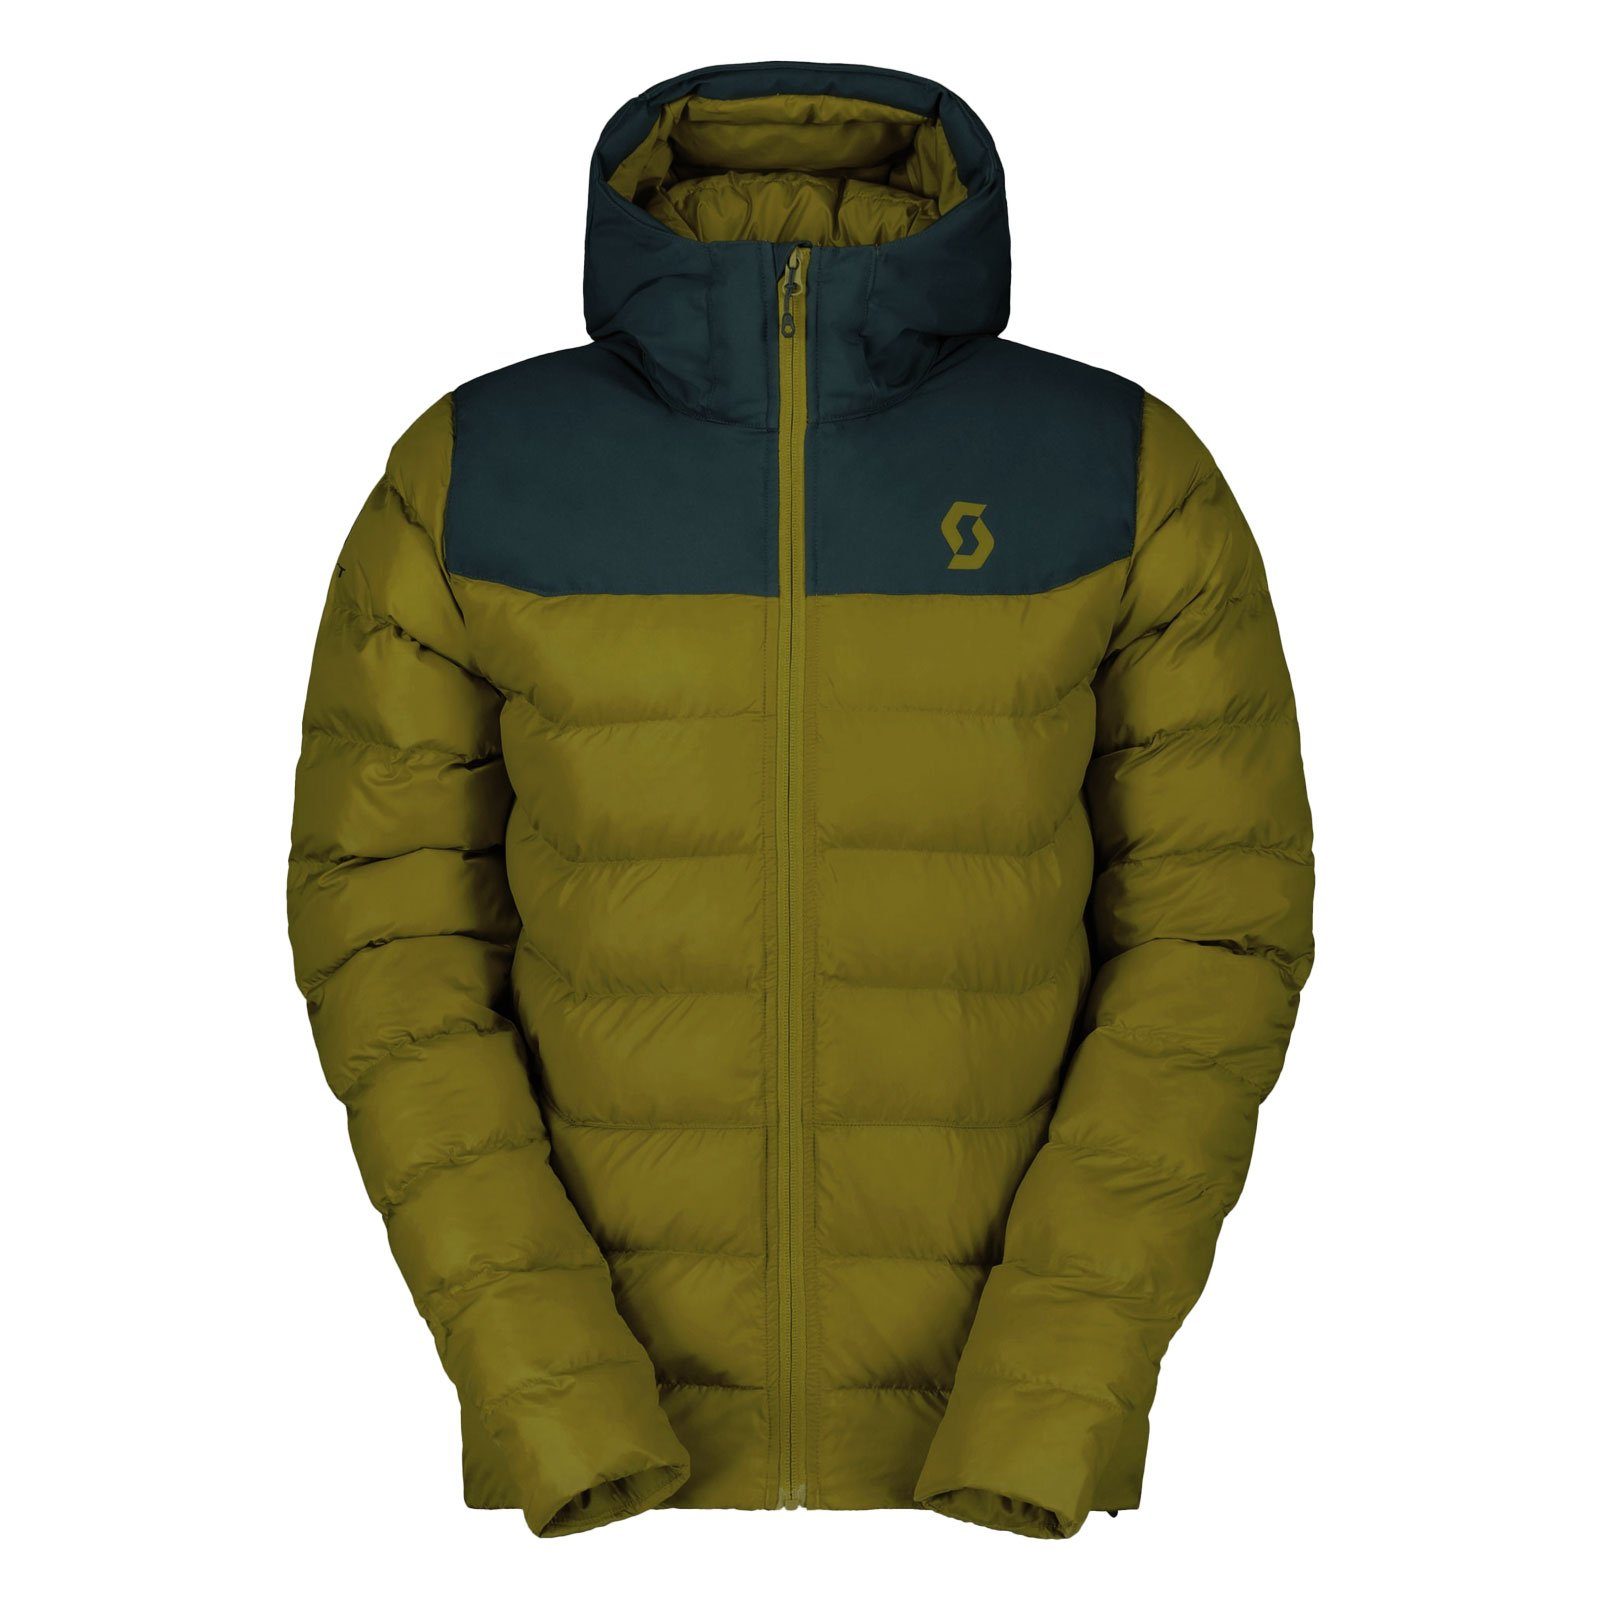 Scott Winterjacke Insuloft Warm Jacke teilweise nachhaltig hergestellt 7650 aruba green / savanna green | Jacken